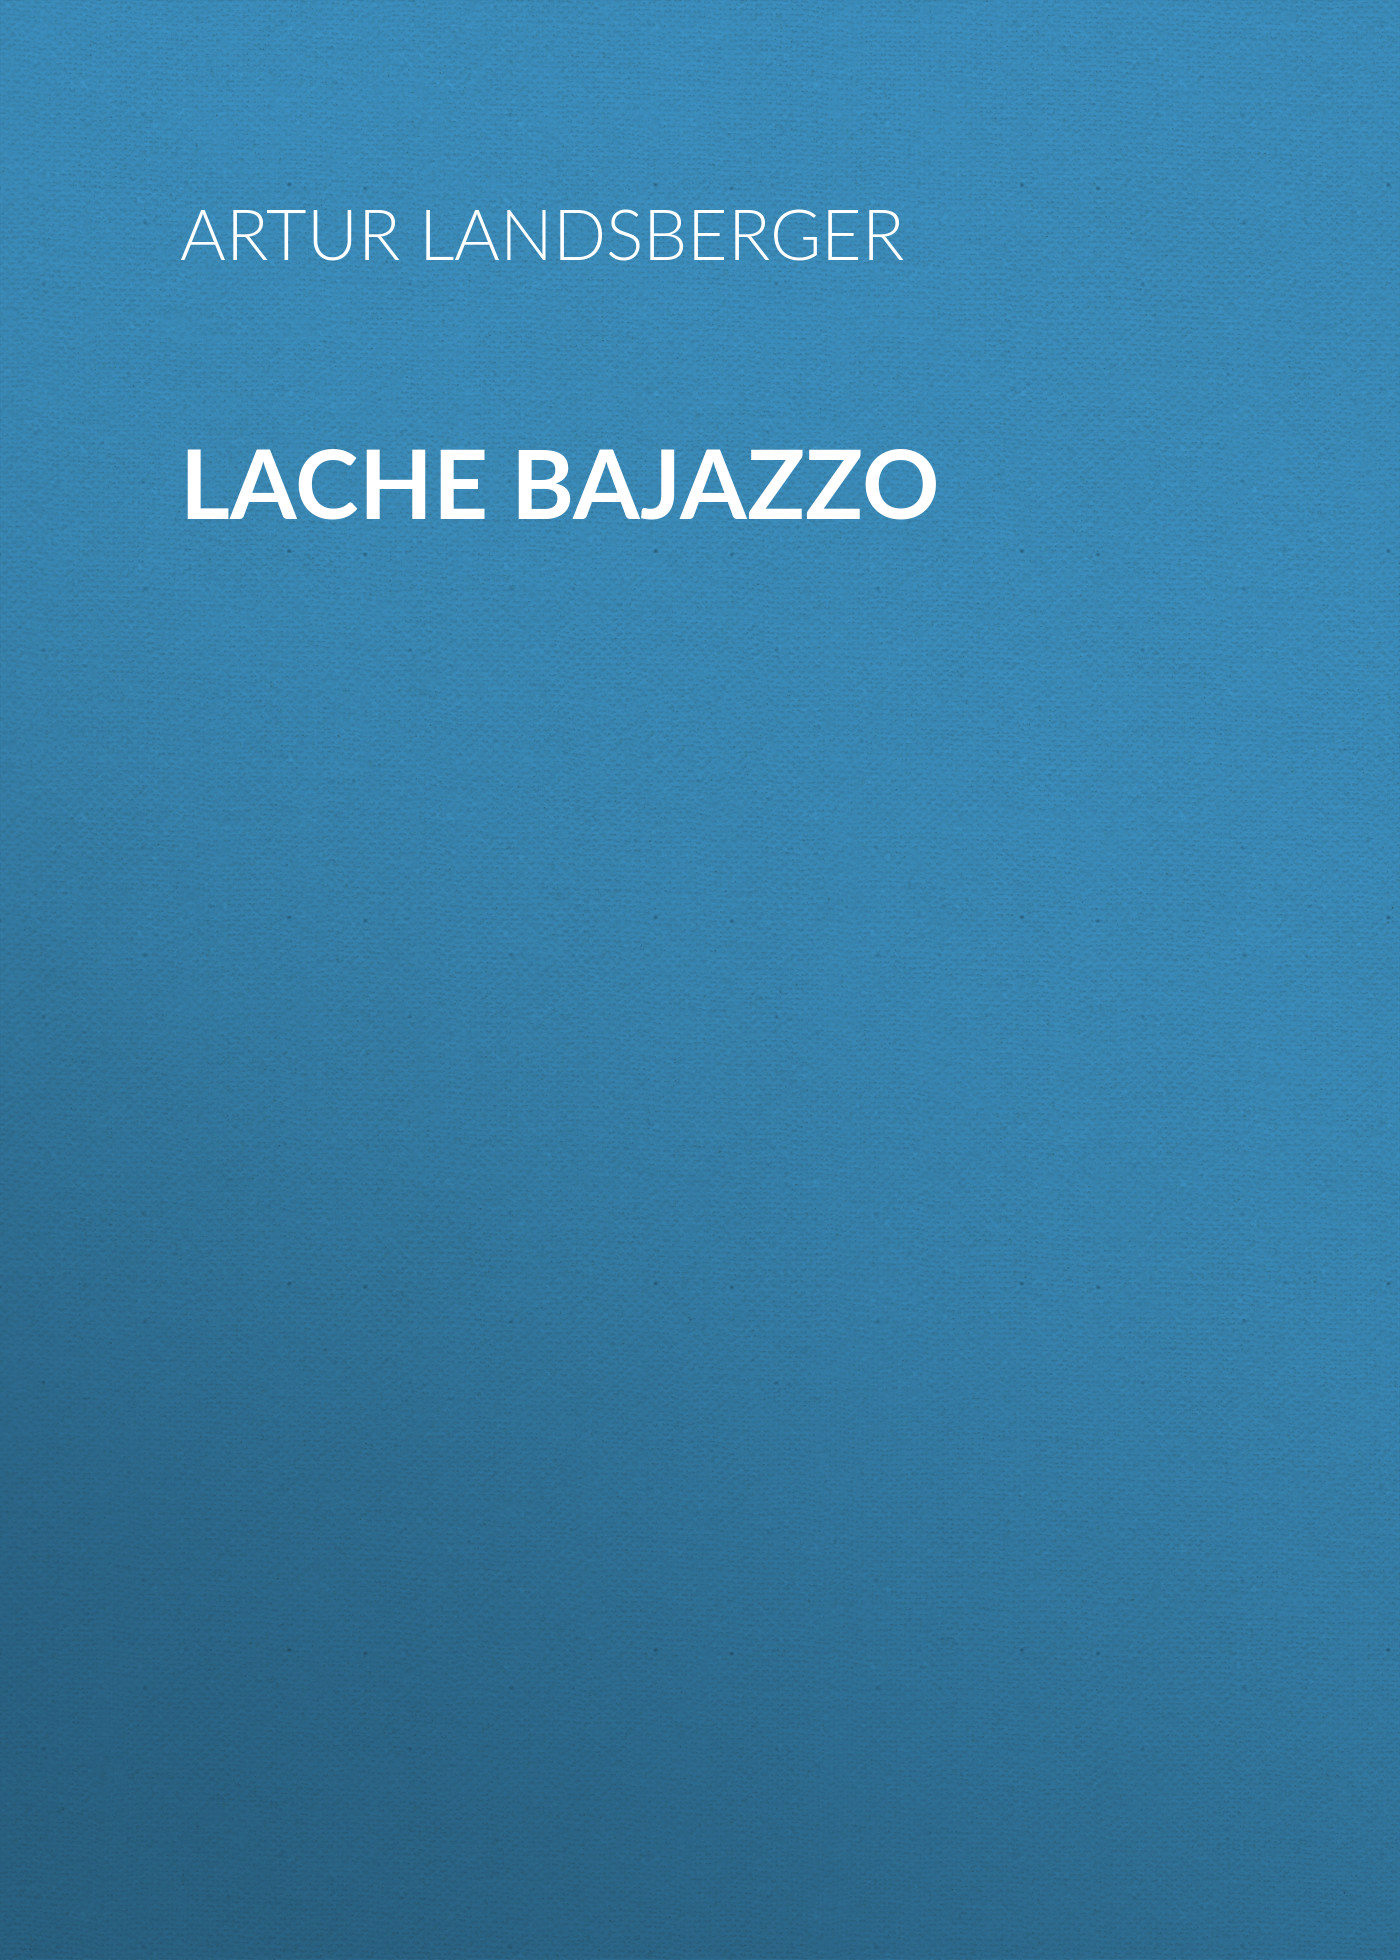 Книга Lache Bajazzo из серии , созданная Artur Landsberger, может относится к жанру Зарубежная классика. Стоимость электронной книги Lache Bajazzo с идентификатором 48632996 составляет 0 руб.